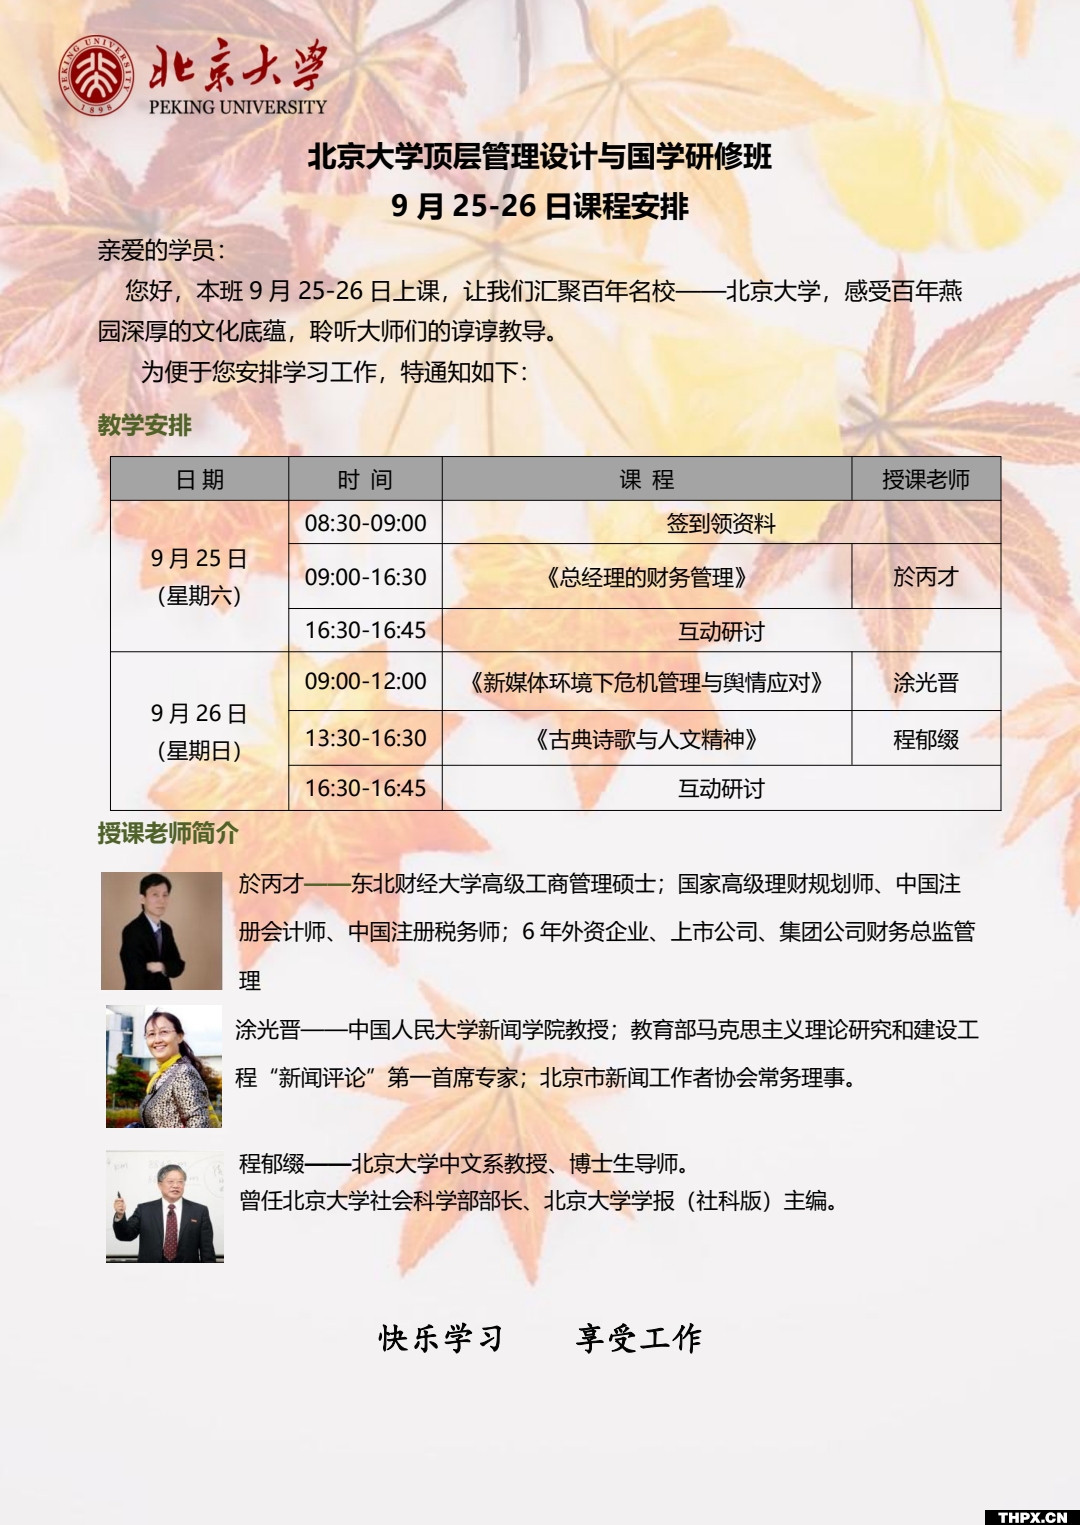 北京大学顶层管理设计与国学研修班 9月25日课程安排